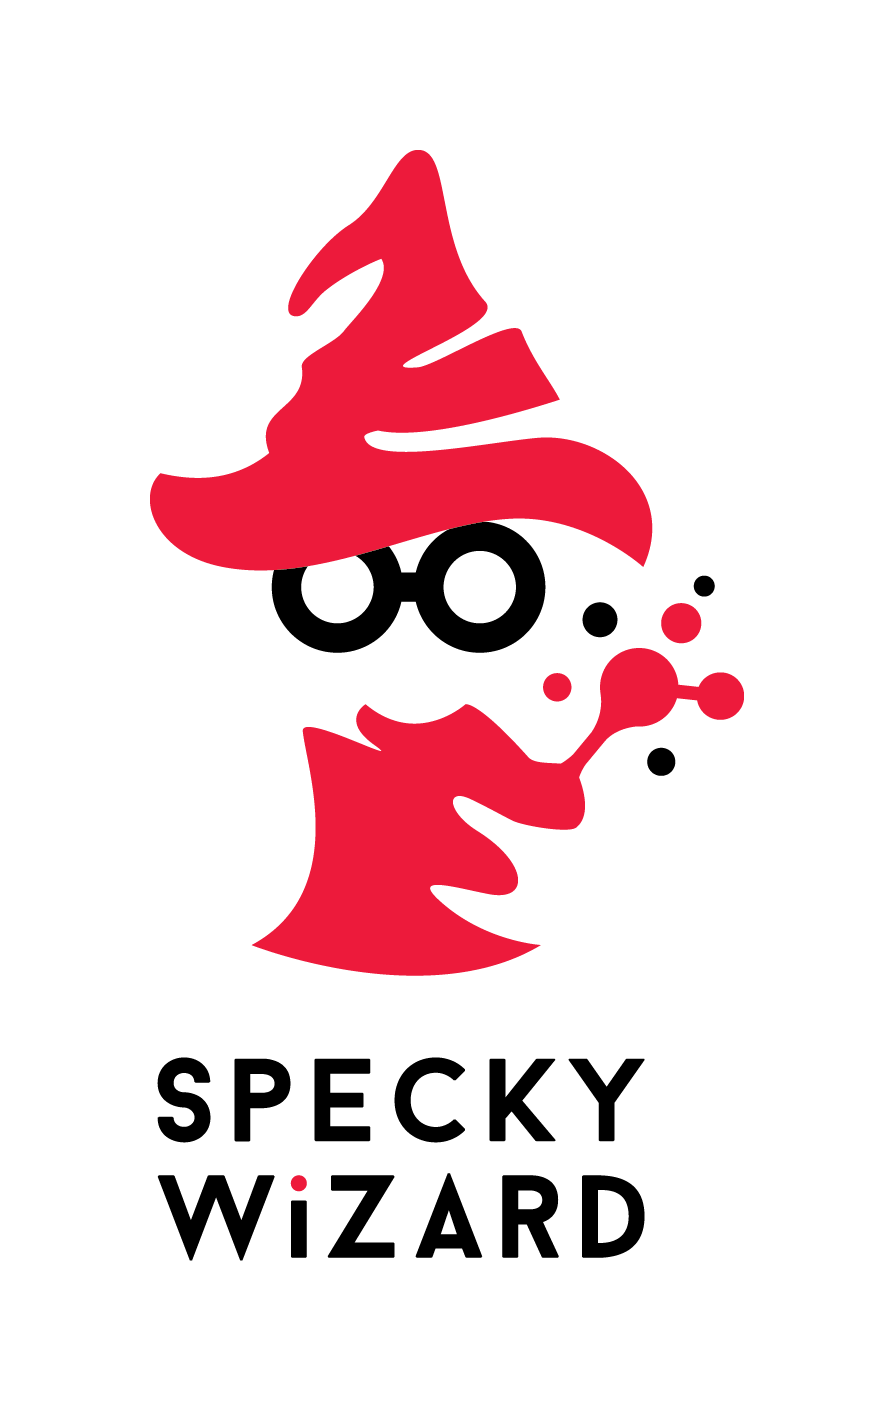 Specky Wizard logo